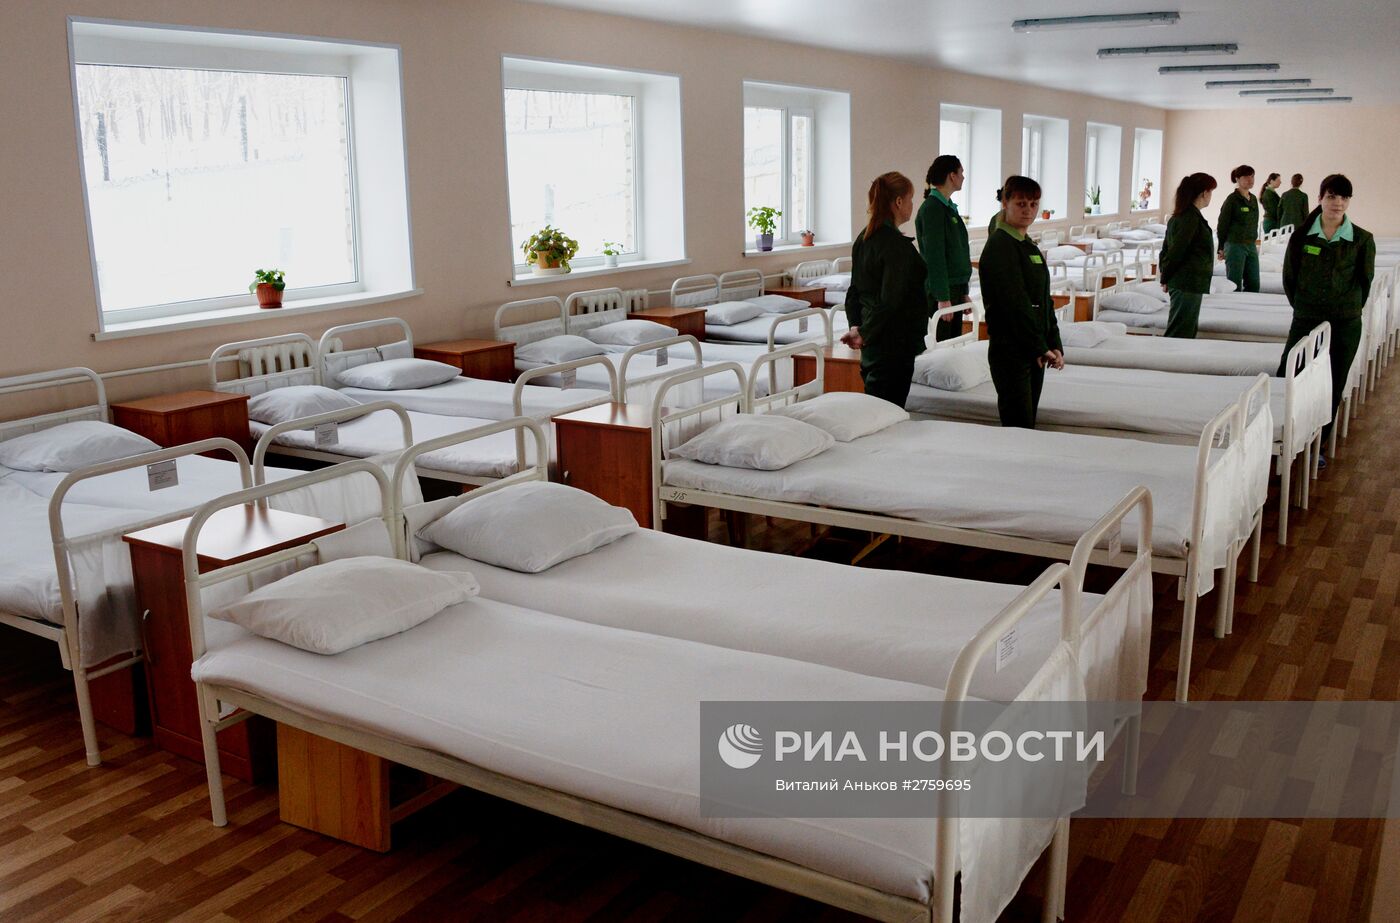 Открытие Центра исправления осуждённых в Приморском крае